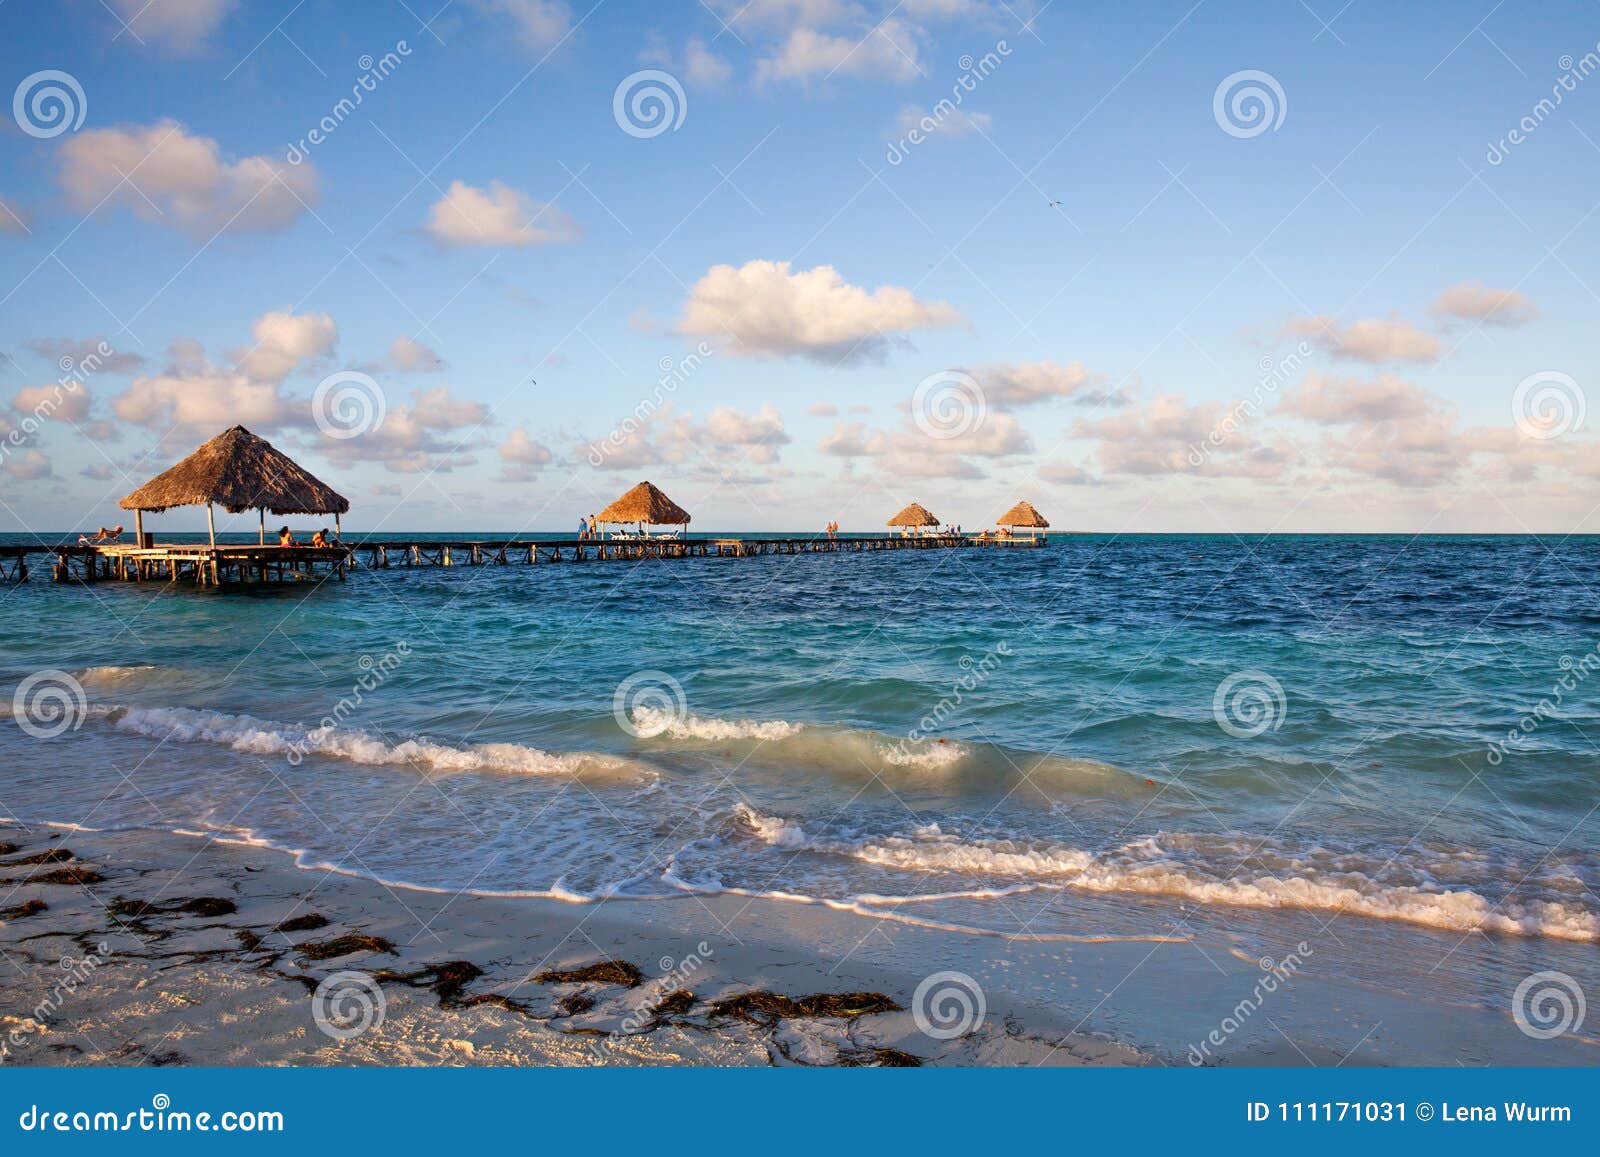 most beautiful beach cuba, jardines del rey